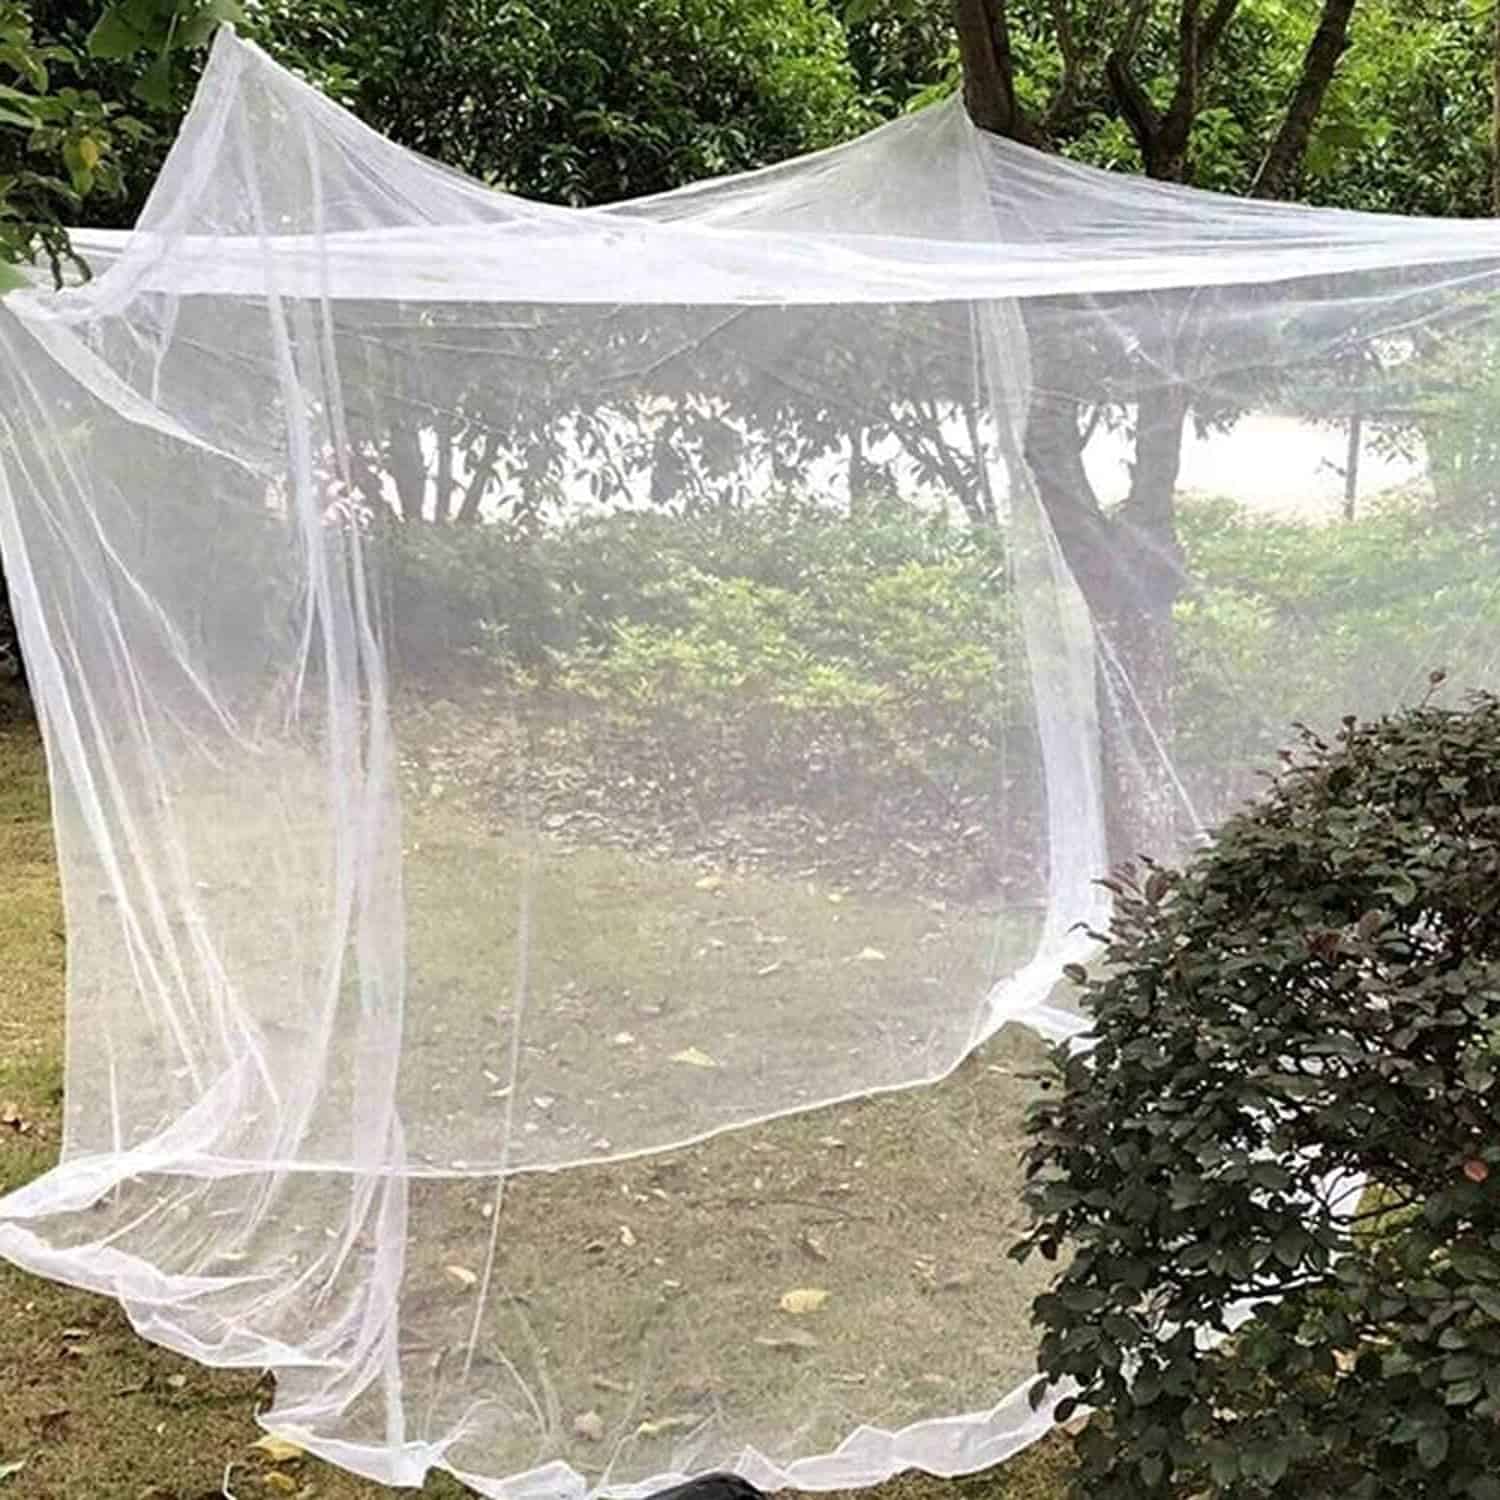 mosquito netting